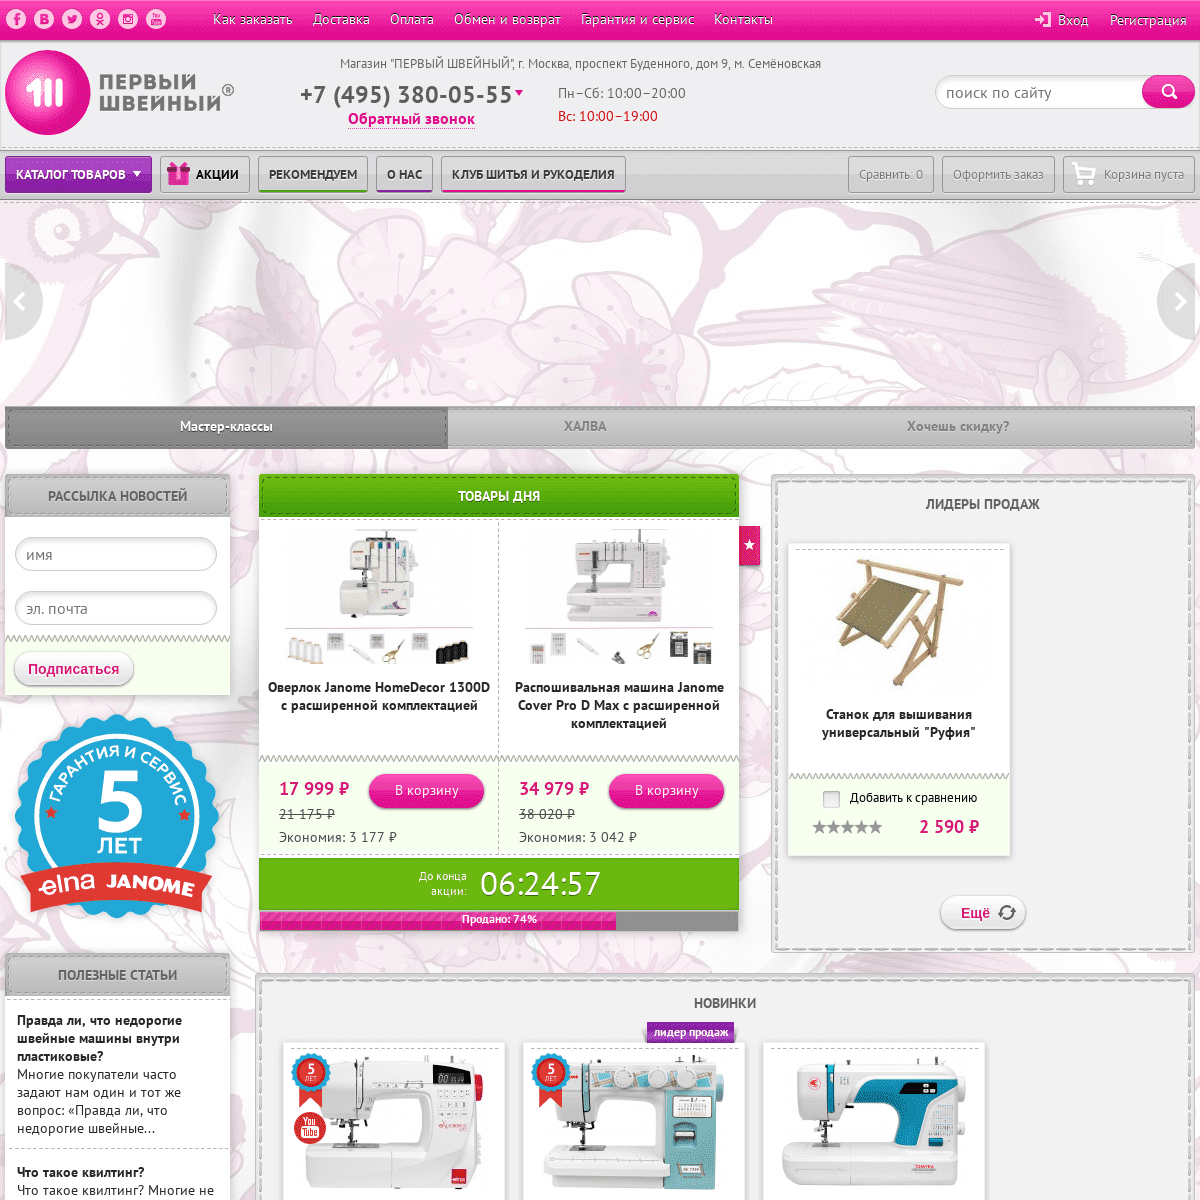 Швейные машины в интернет-магазине «Первый Швейный» - специализированный сайт-магазин швейных машин и другой швейной техники с д